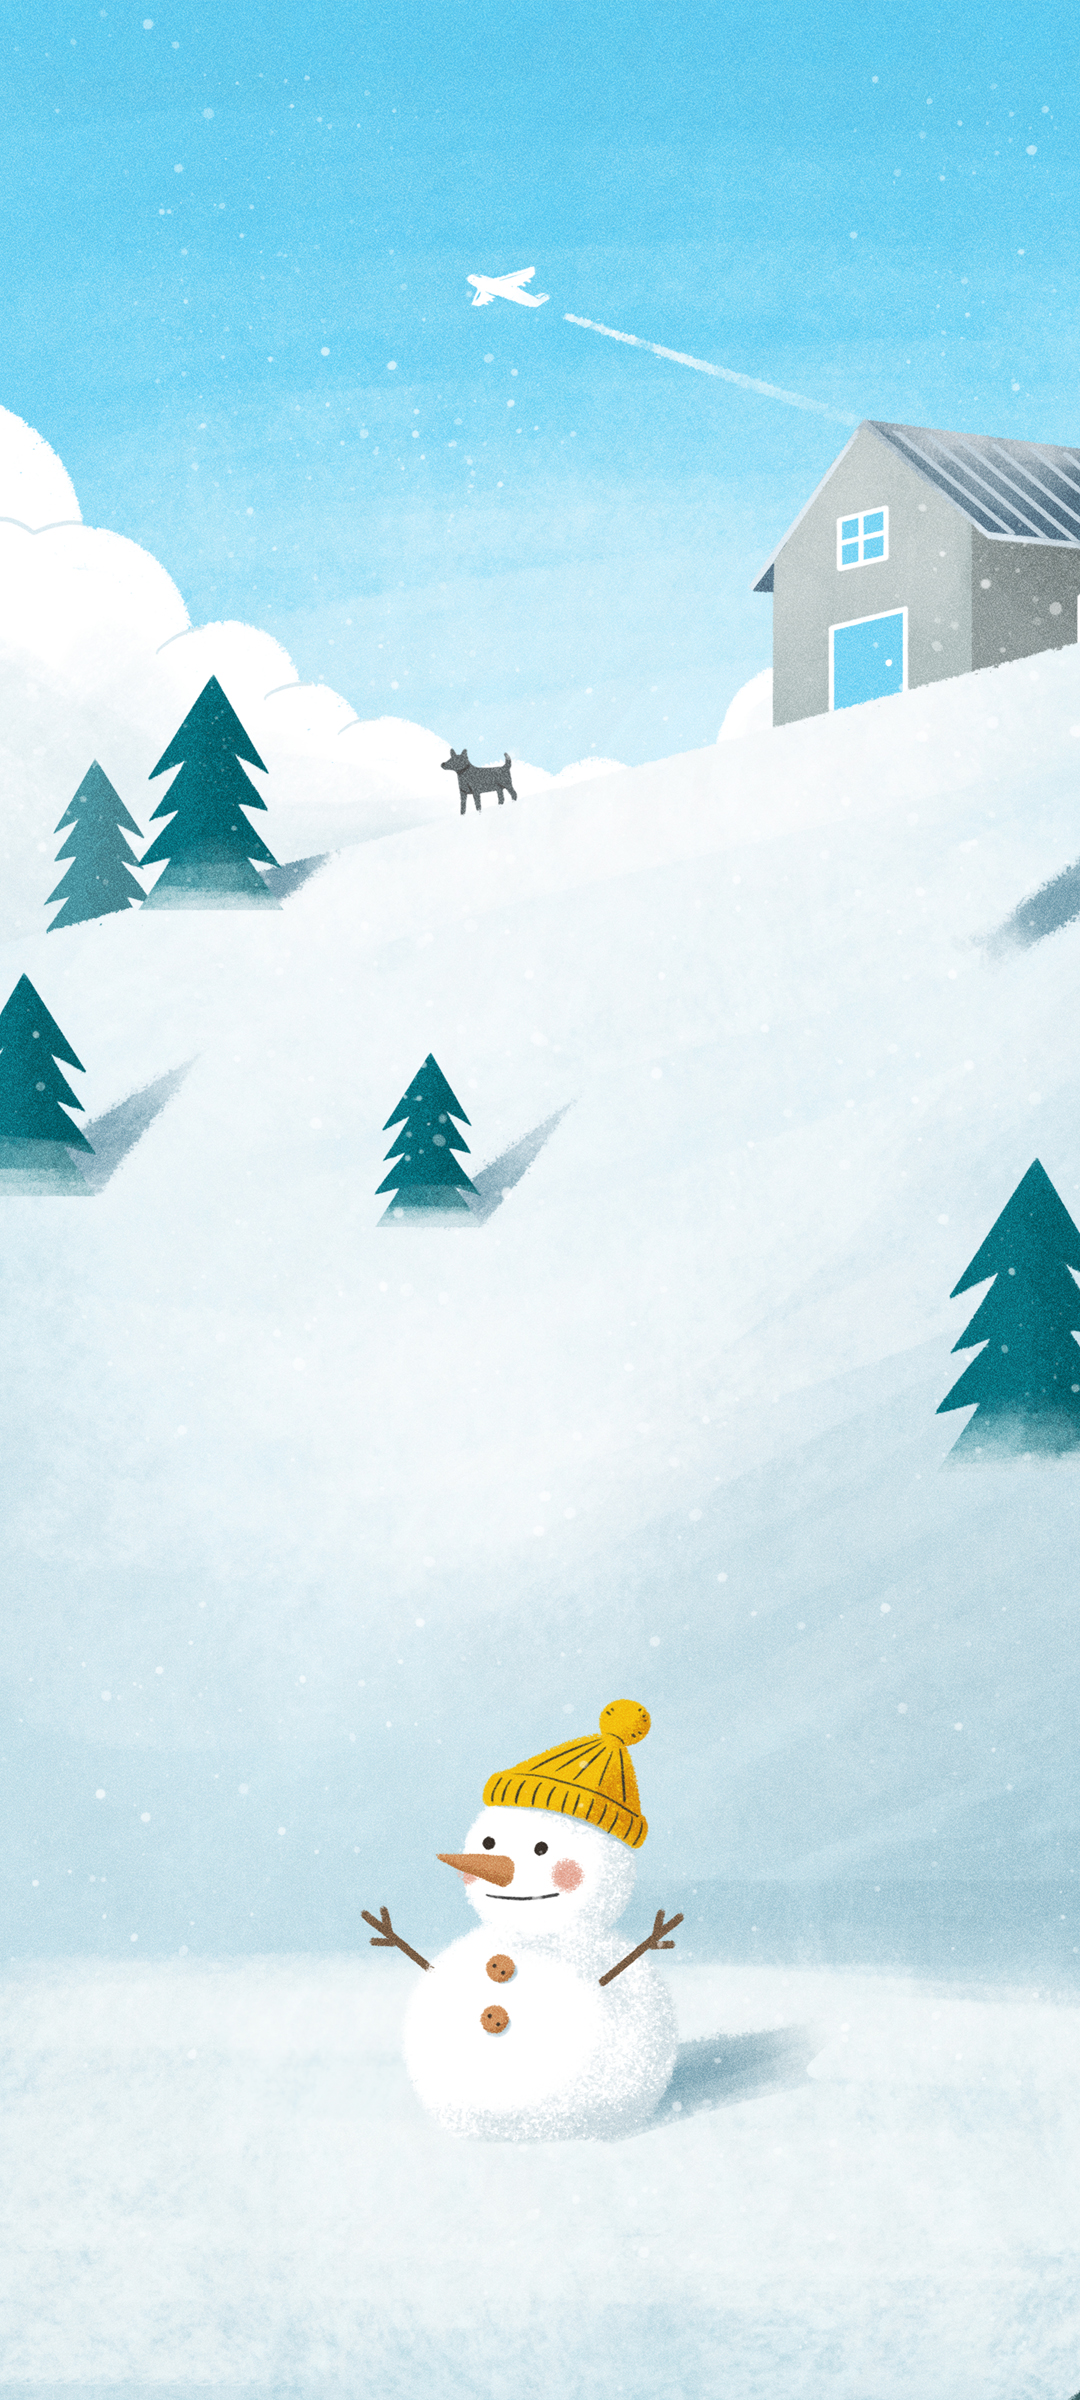 冬天 手绘 风景 雪人 雪 房子 小狗 树 天空 飞机 手机 壁纸